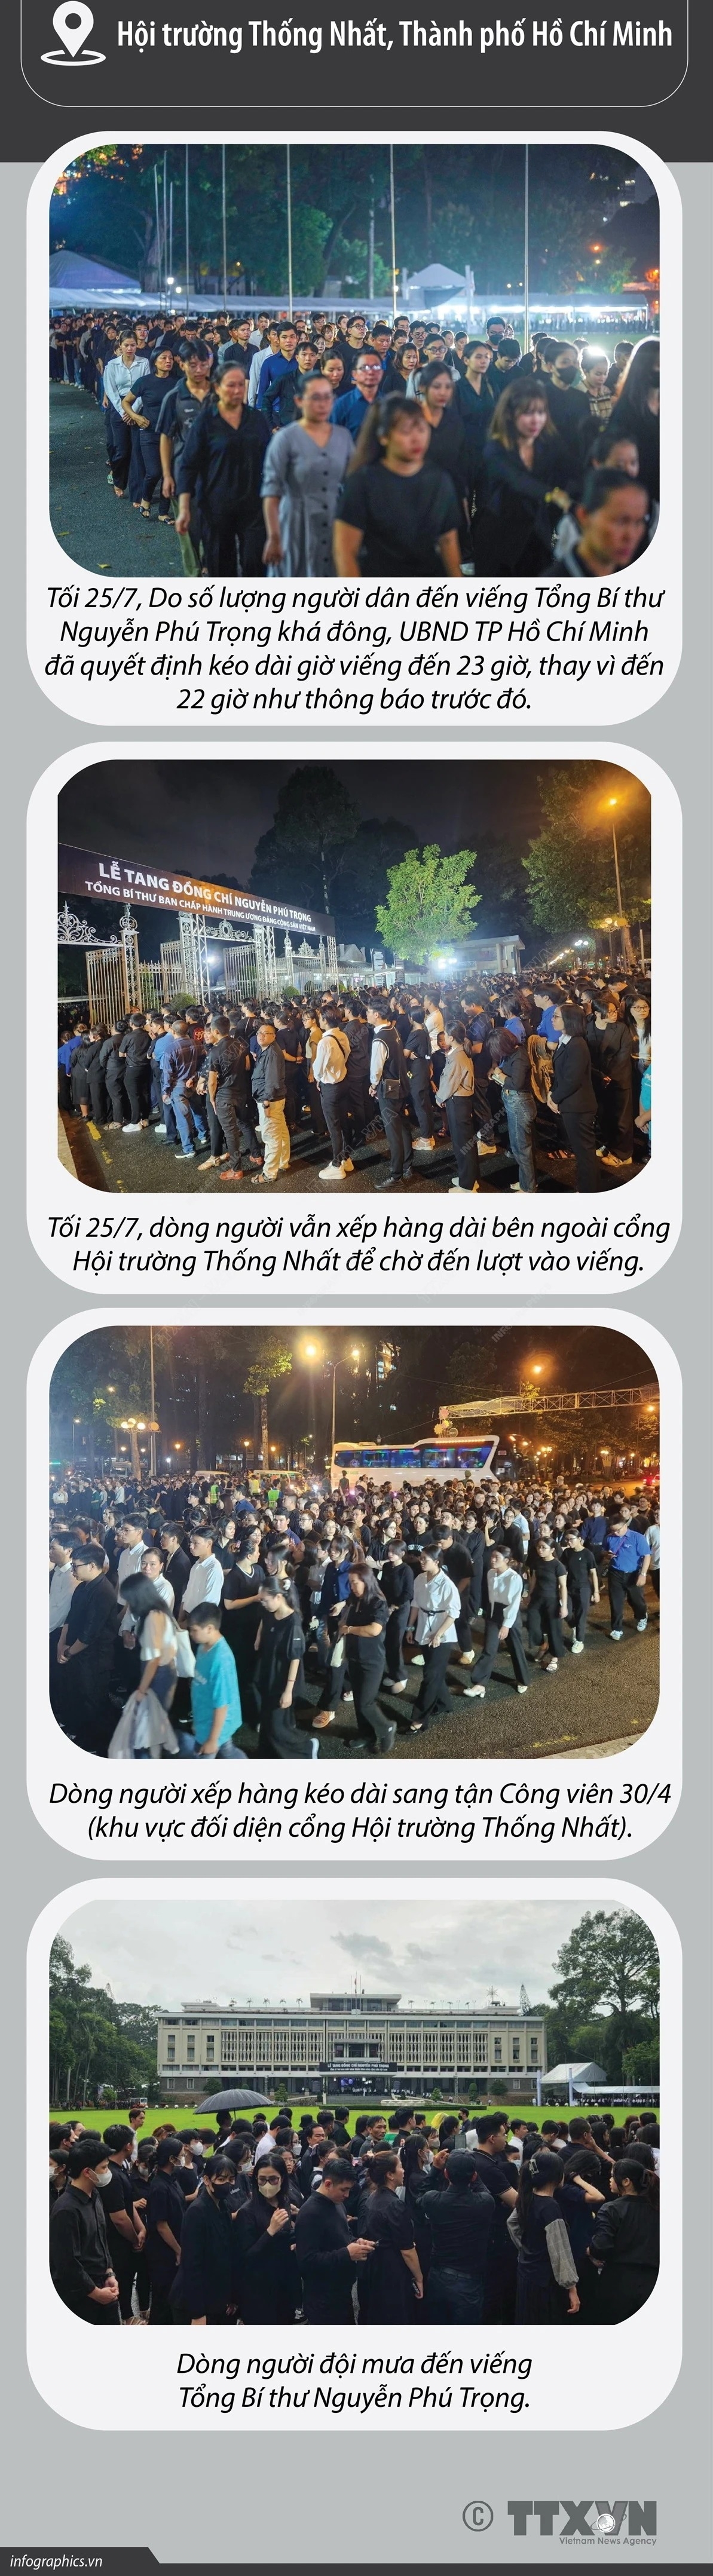 Hàng vạn người dân thành kính vào viếng Tổng Bí thư Nguyễn Phú Trọng